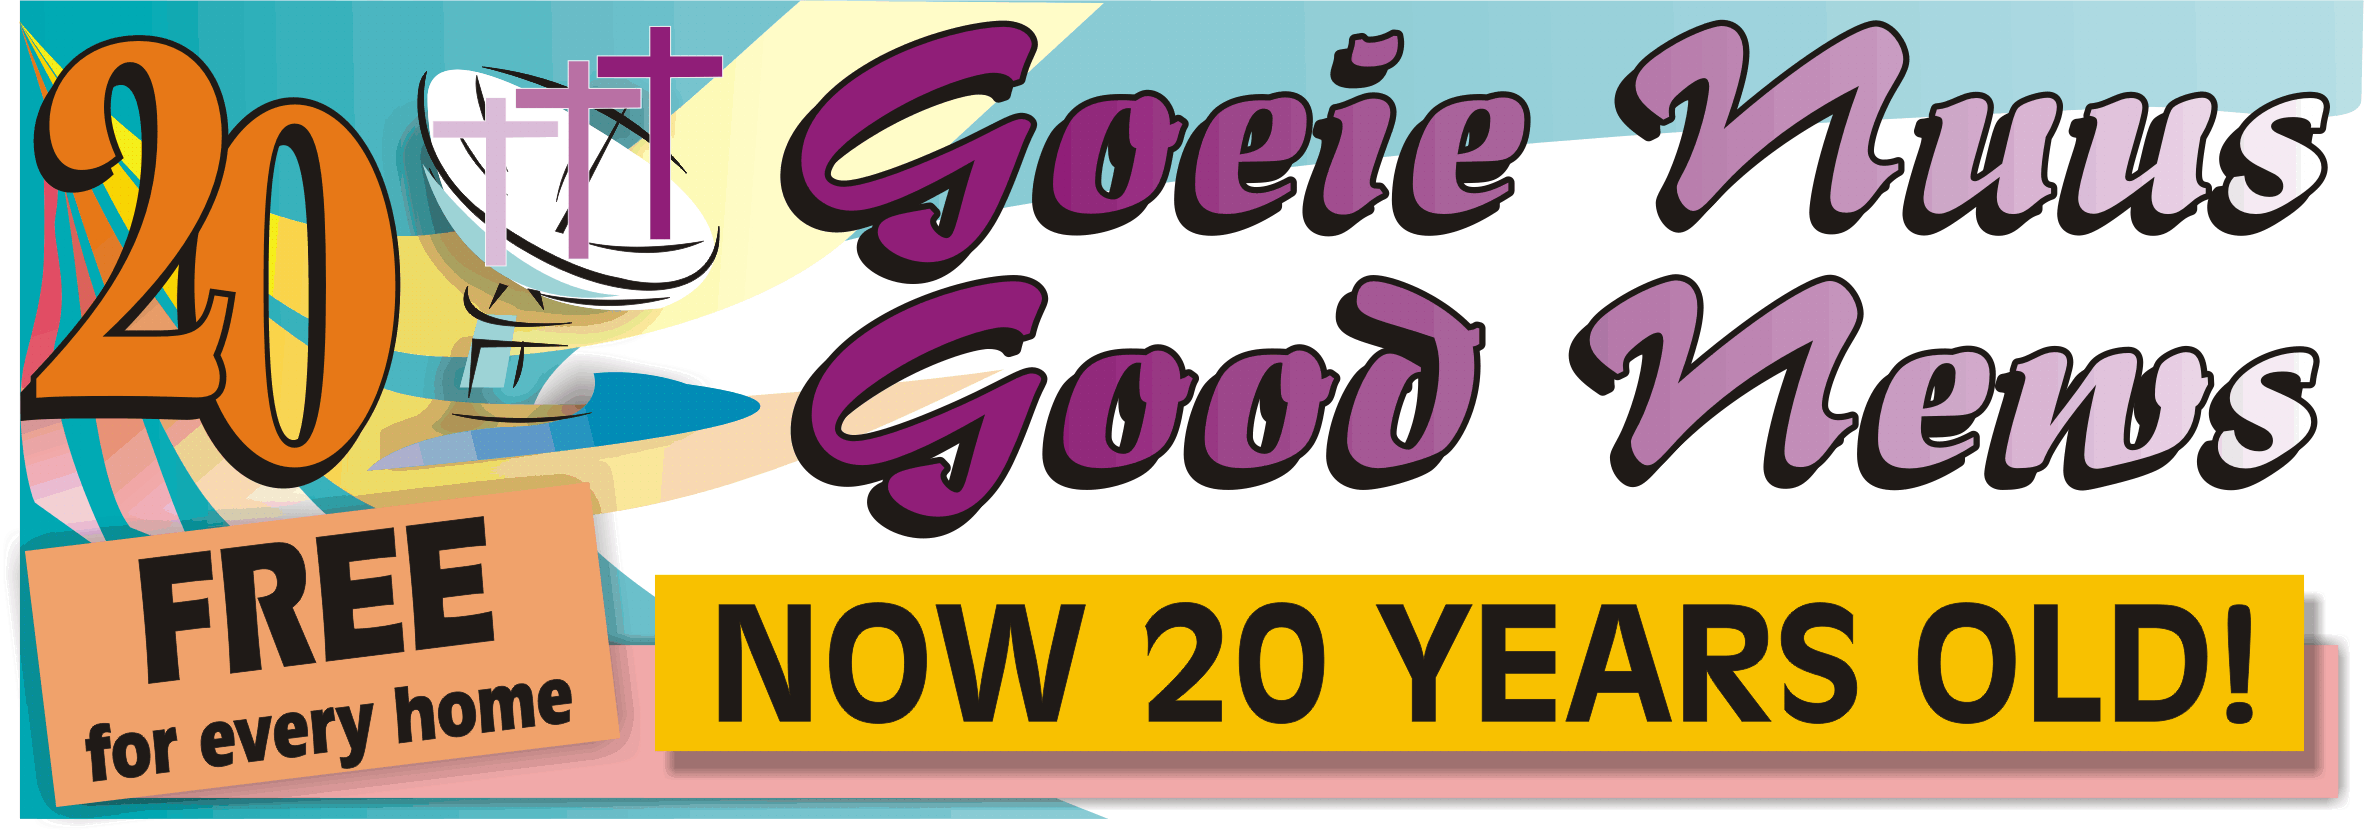 GOEIE NUUS / GOOD NEWS